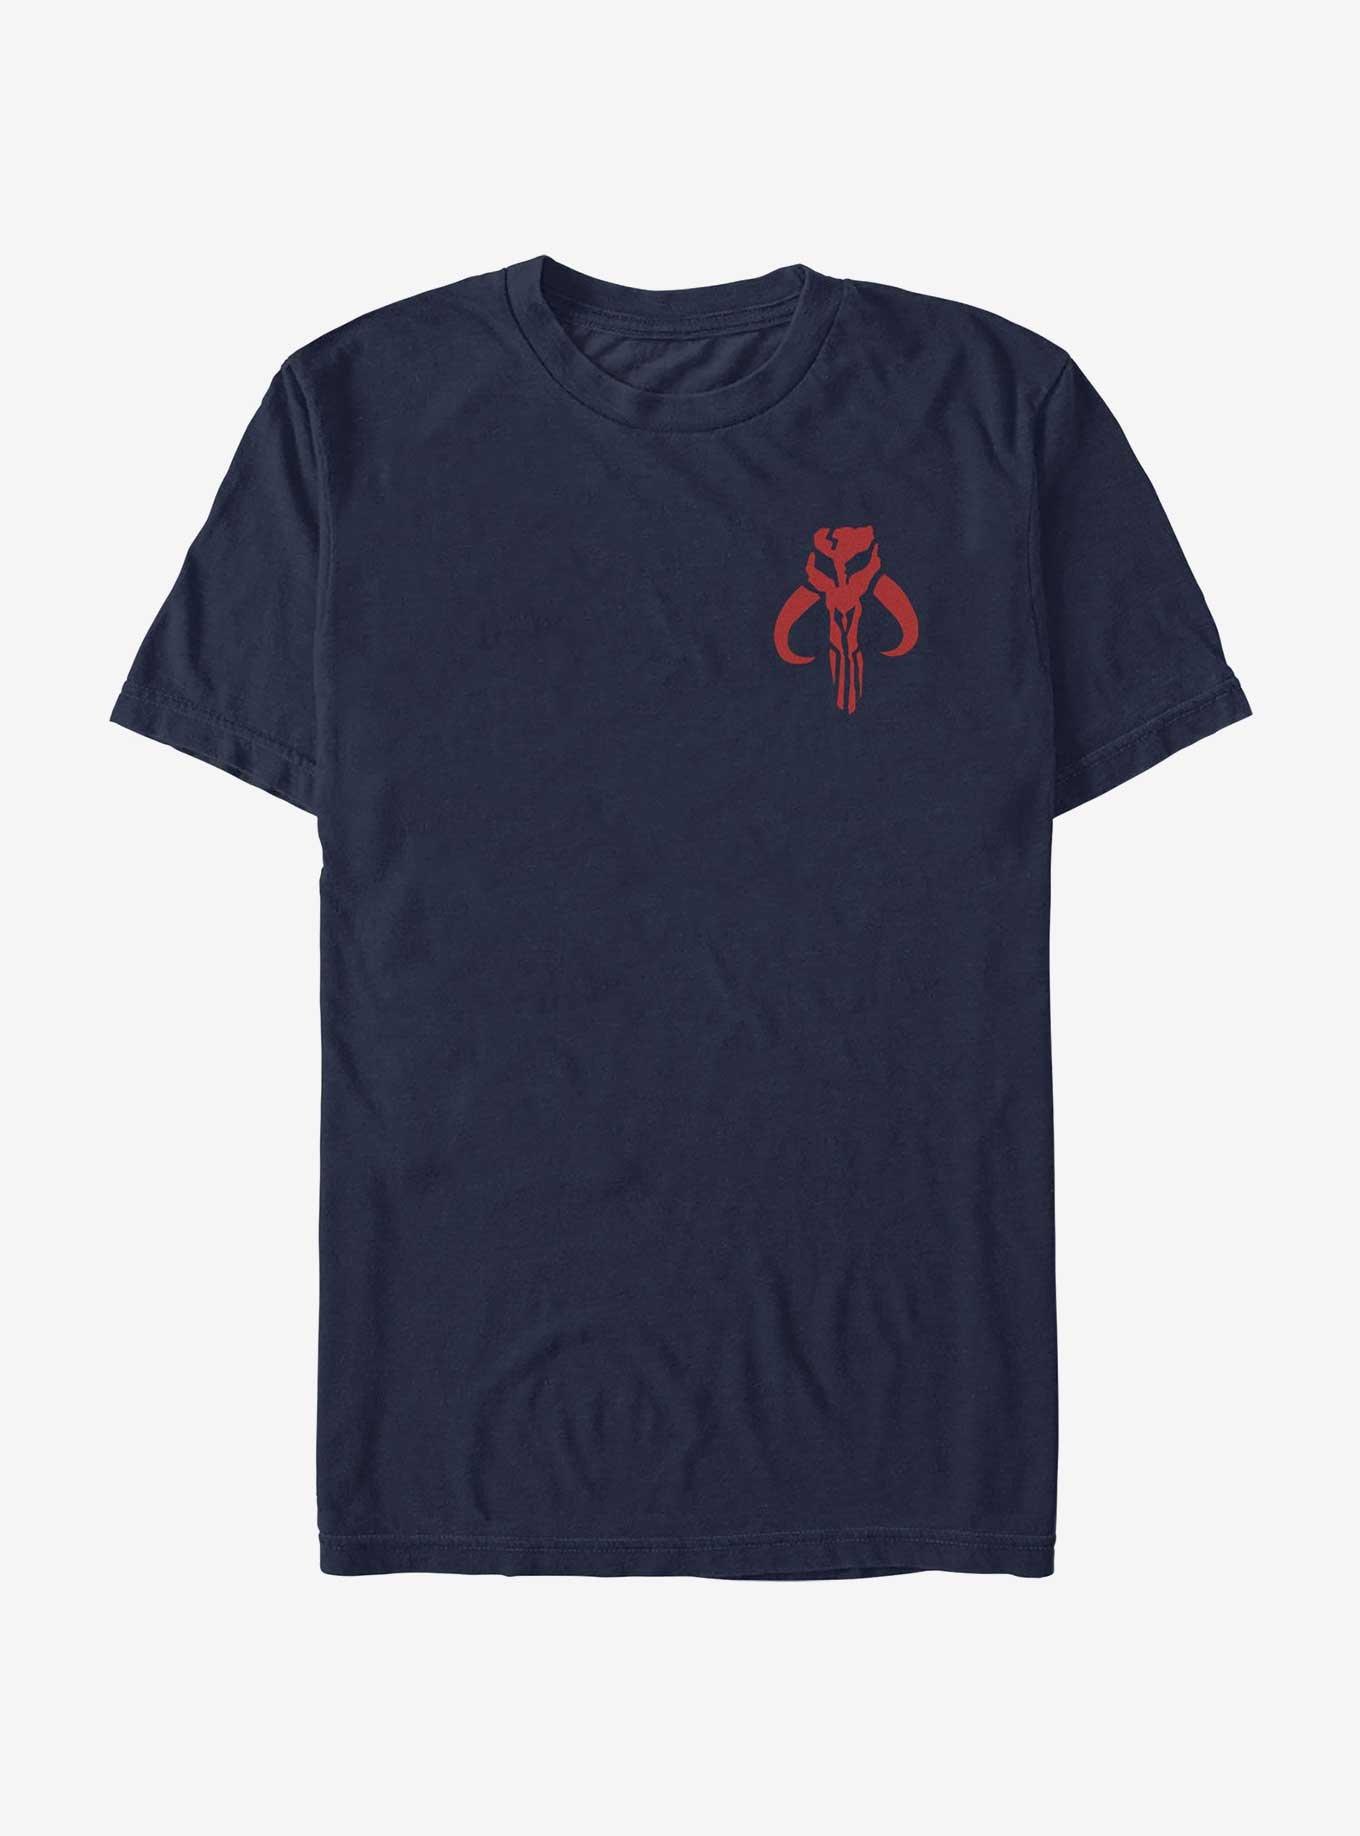 Star Wars Mythosaur Symbol T-Shirt